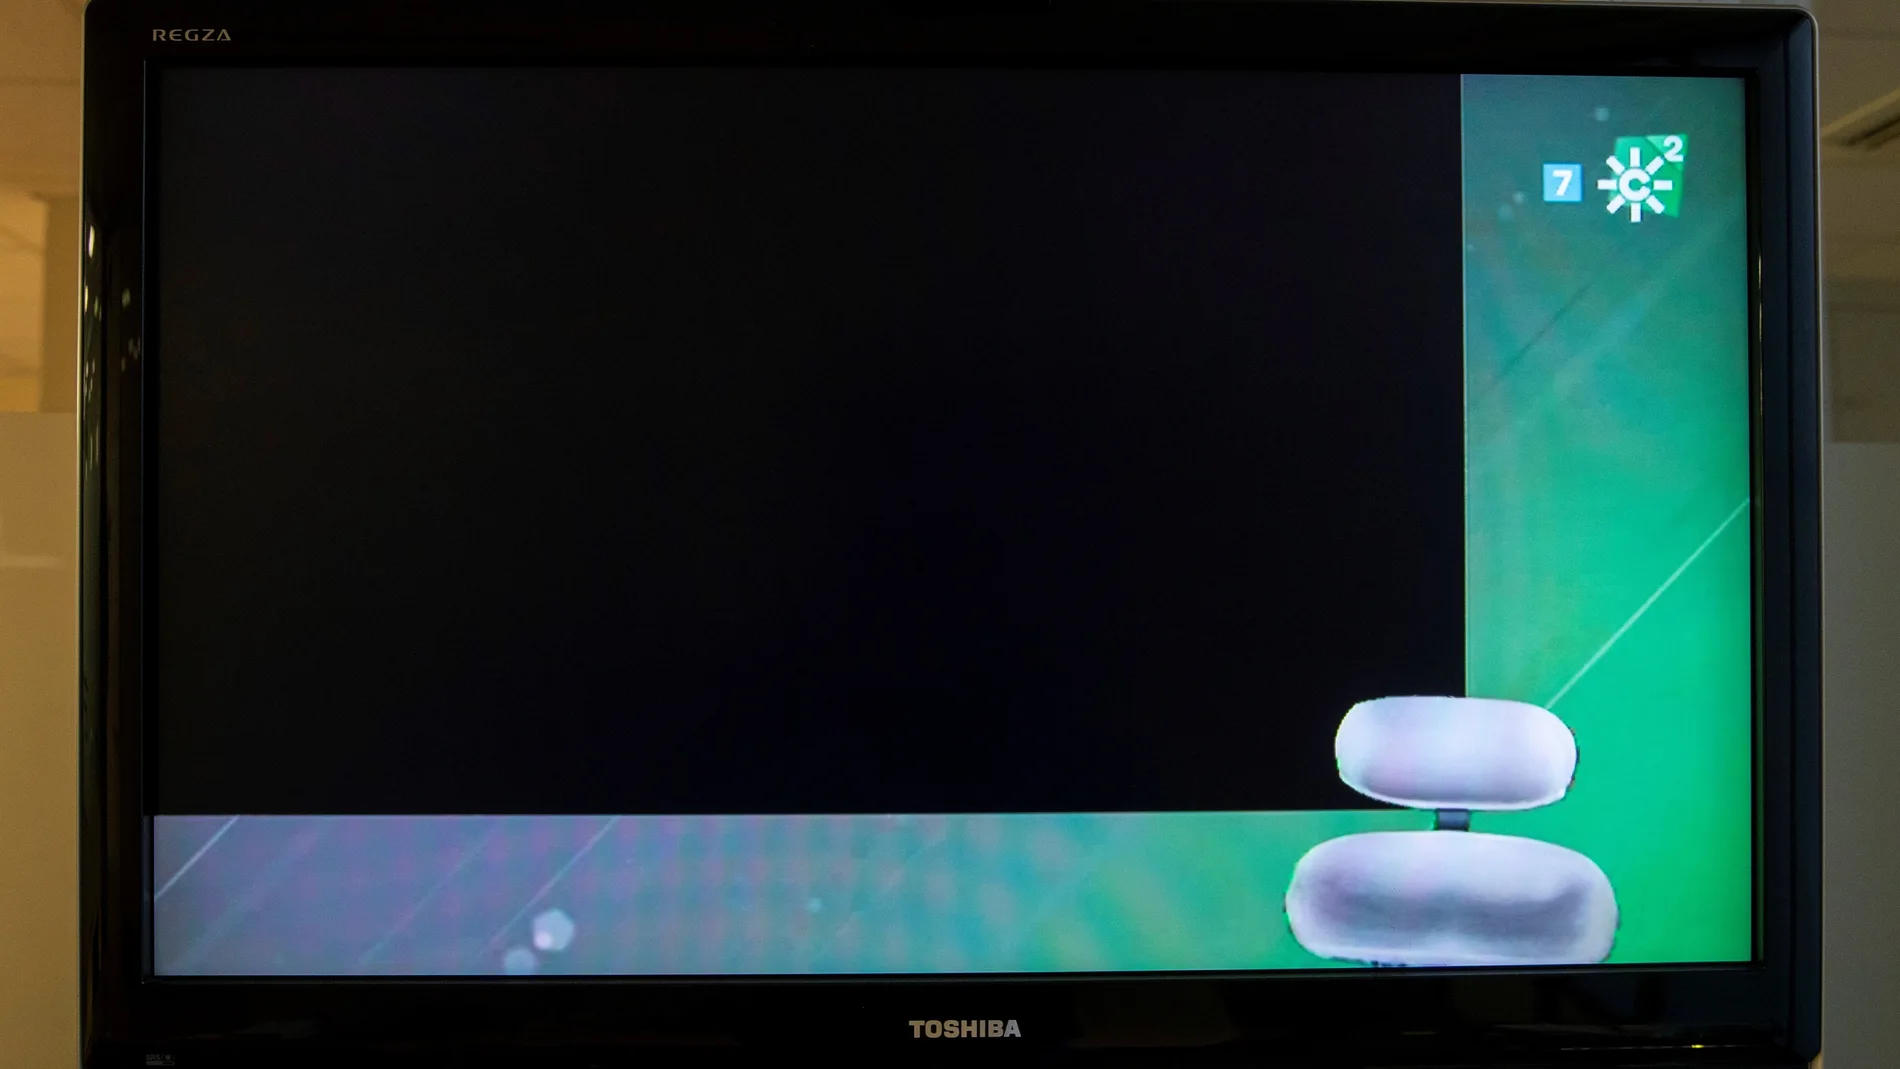 Una pantalla de un televisor encendido muestra la emisión del segundo canal de Canal Sur en negro y con la silla del intérprete de la lengua de signos vacía